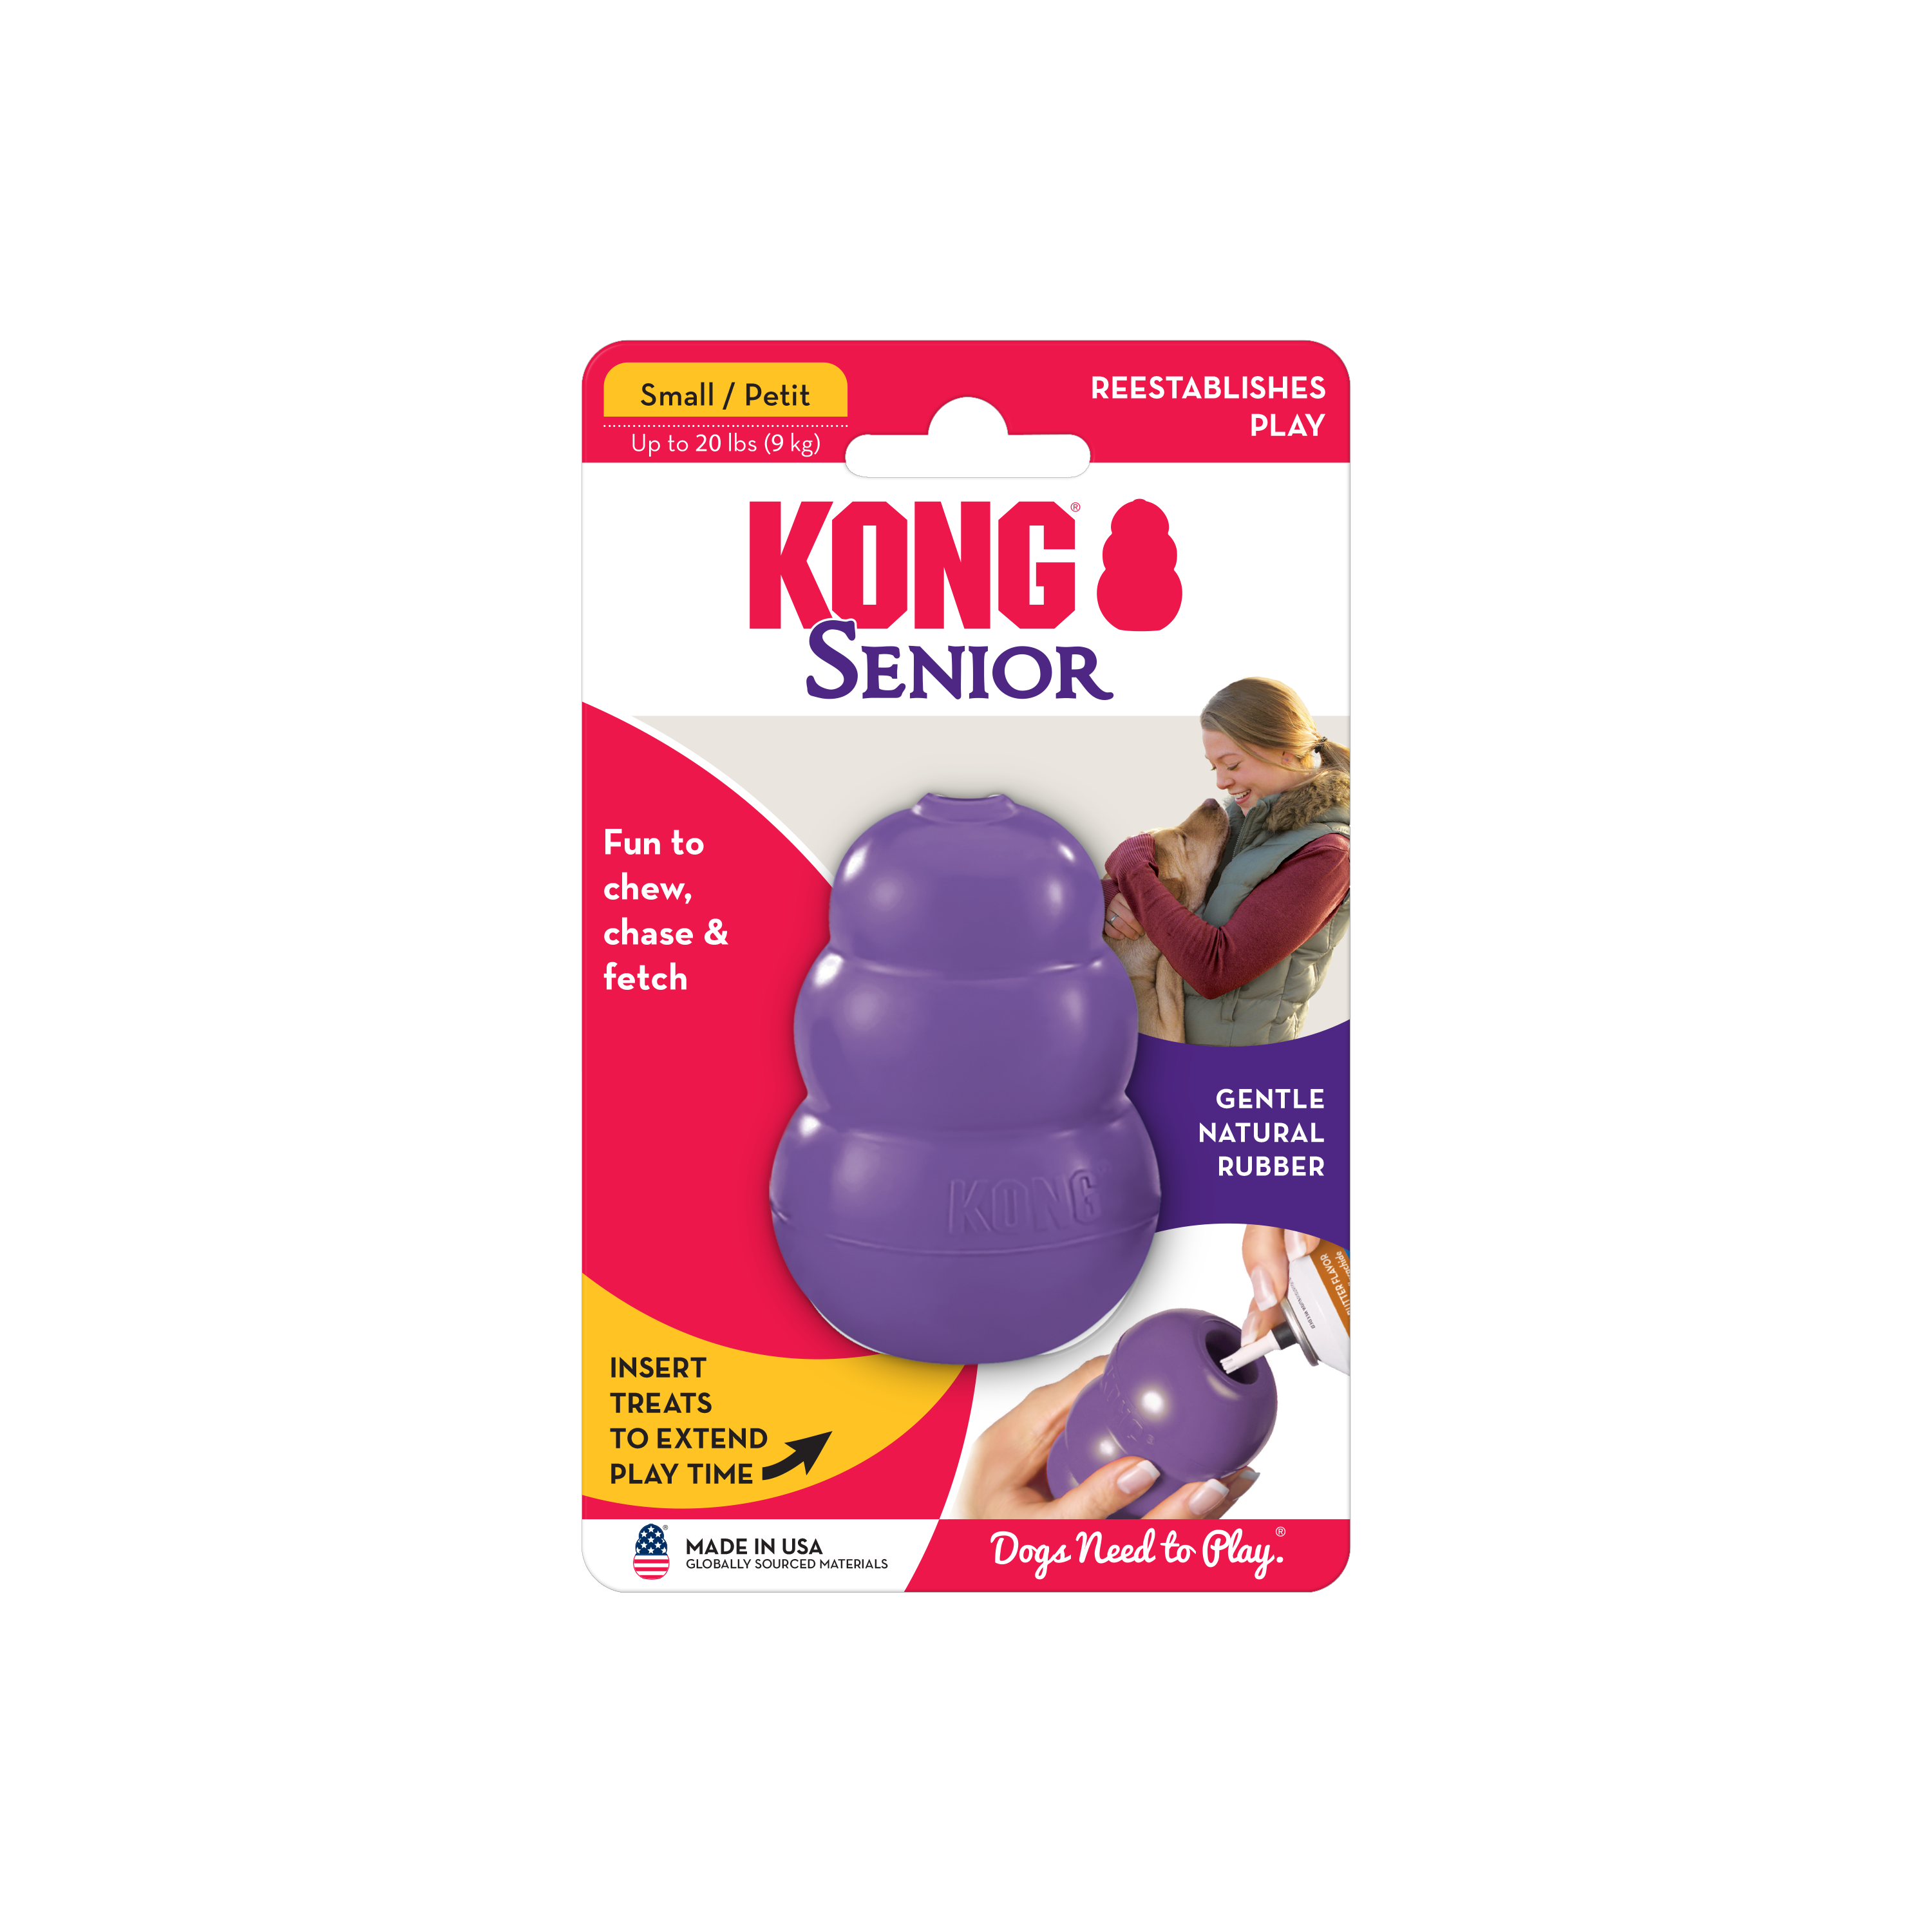 KONG Senior onpack product image